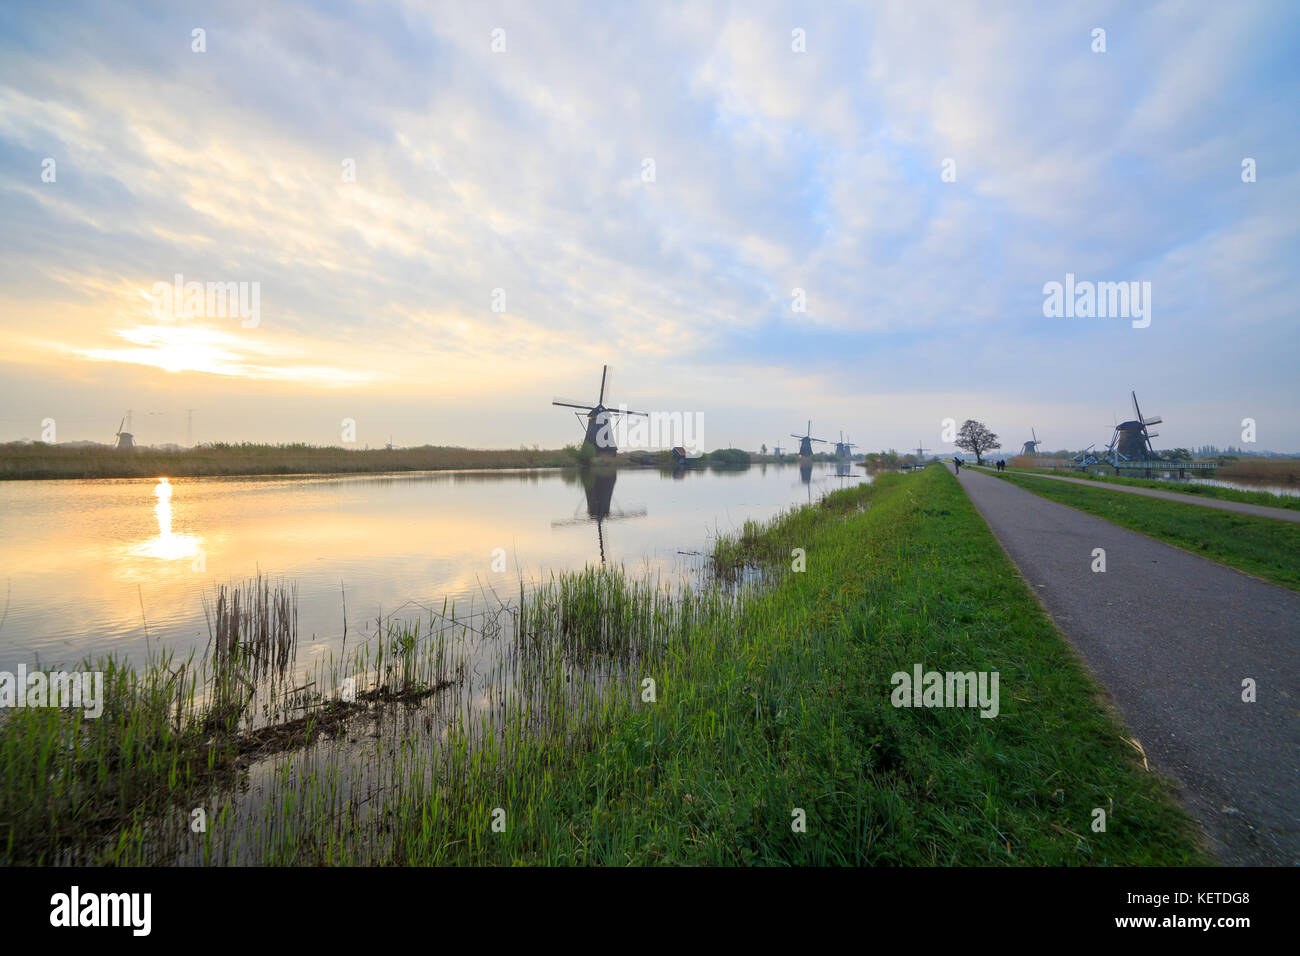 L'aube sur les moulins à vent reflète dans le canal entouré de vertes prairies kinderlijk molenwaard l'Europe Pays-Bas Hollande du Sud Banque D'Images